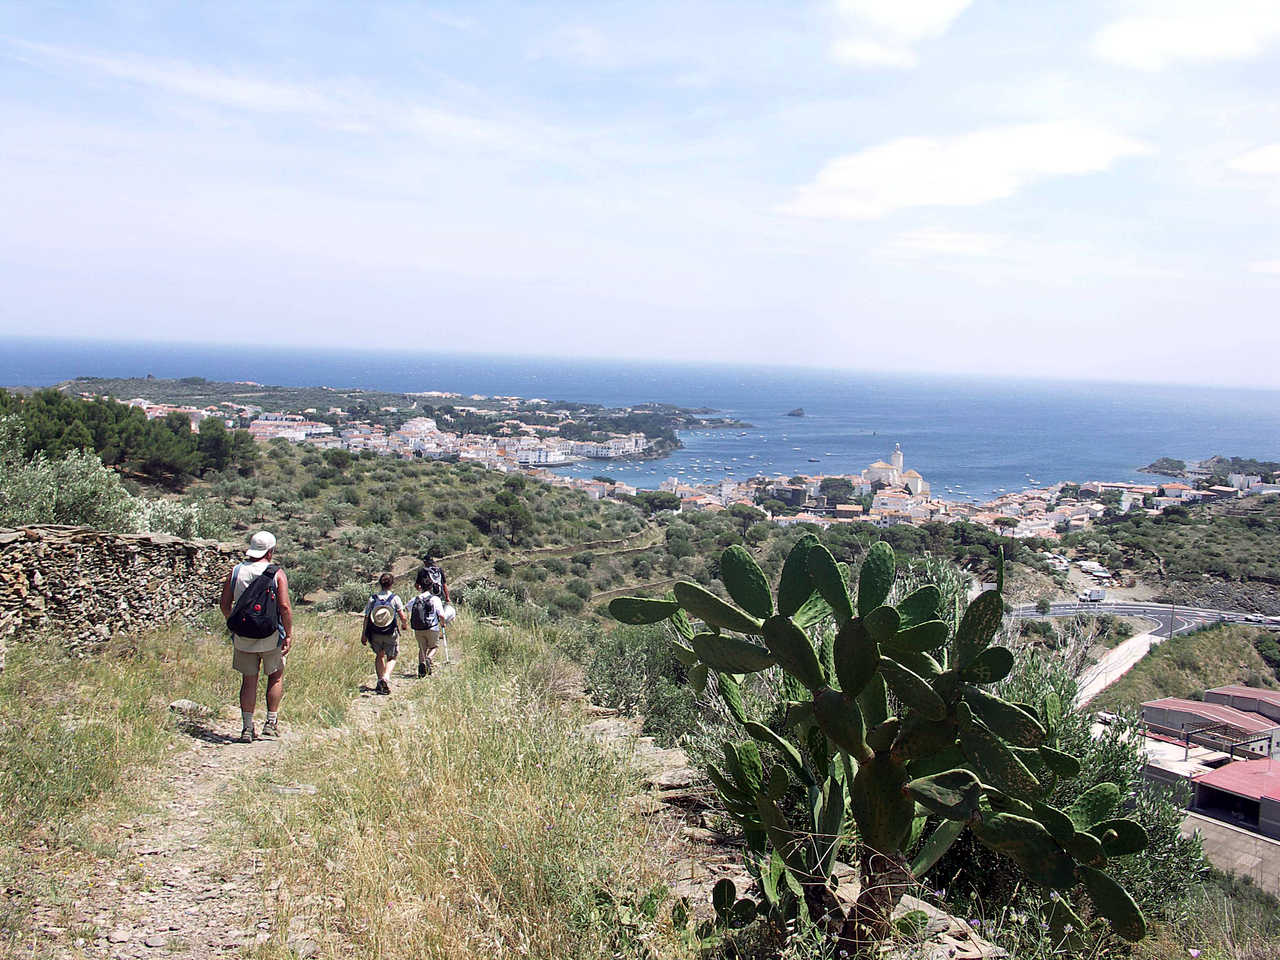 Randonneurs sur le chemin entre Collioure et Cadaques avec vue mer